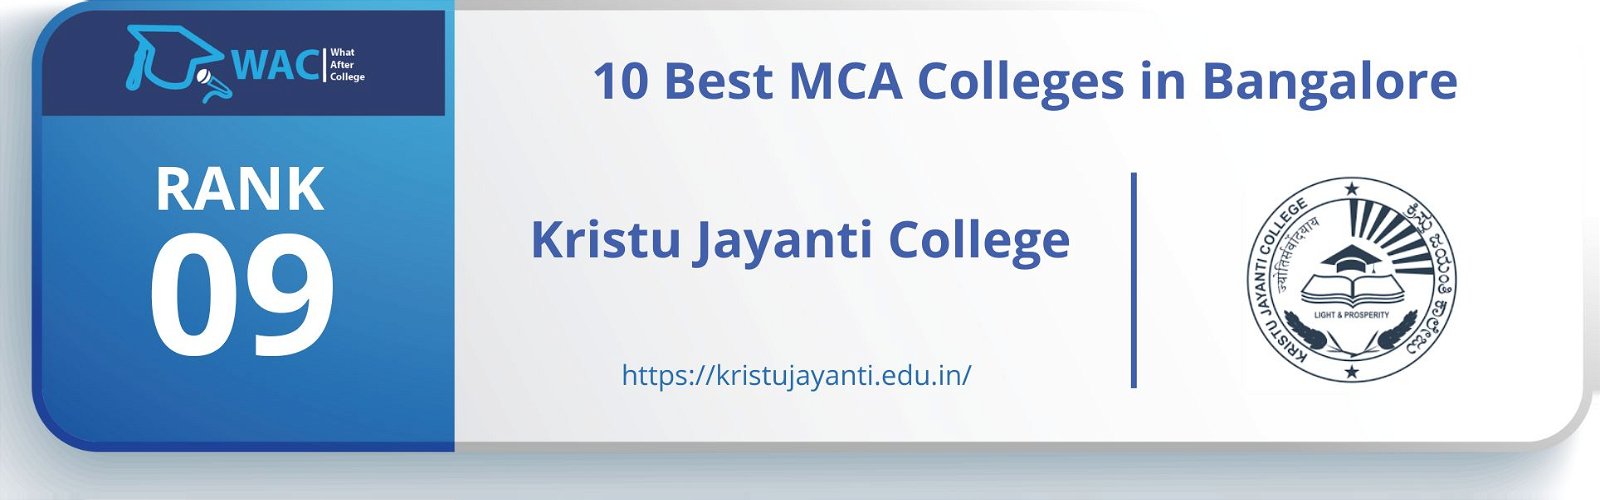 top mca colleges in bangalore